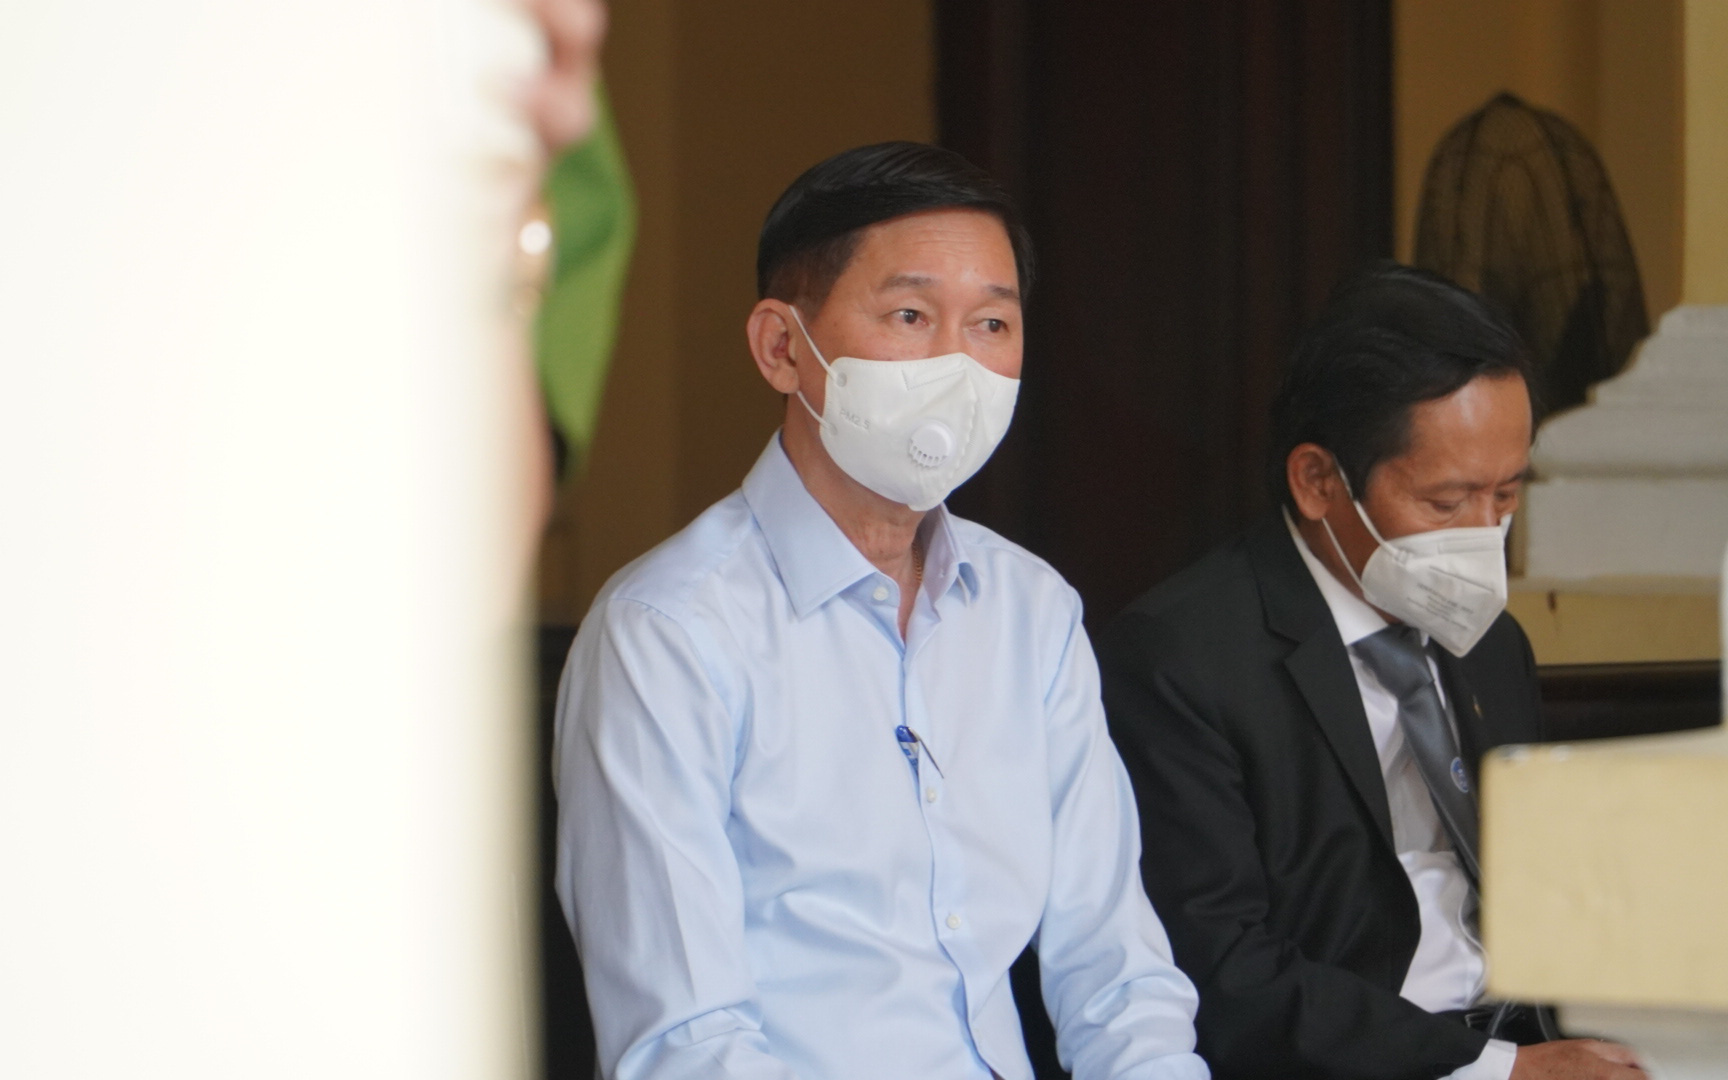 Phiên tòa vụ SAGRI liên quan nguyên Phó Chủ tịch TP.HCM Trần Vĩnh Tuyến: Tạm hoãn vì lý do bất ngờ